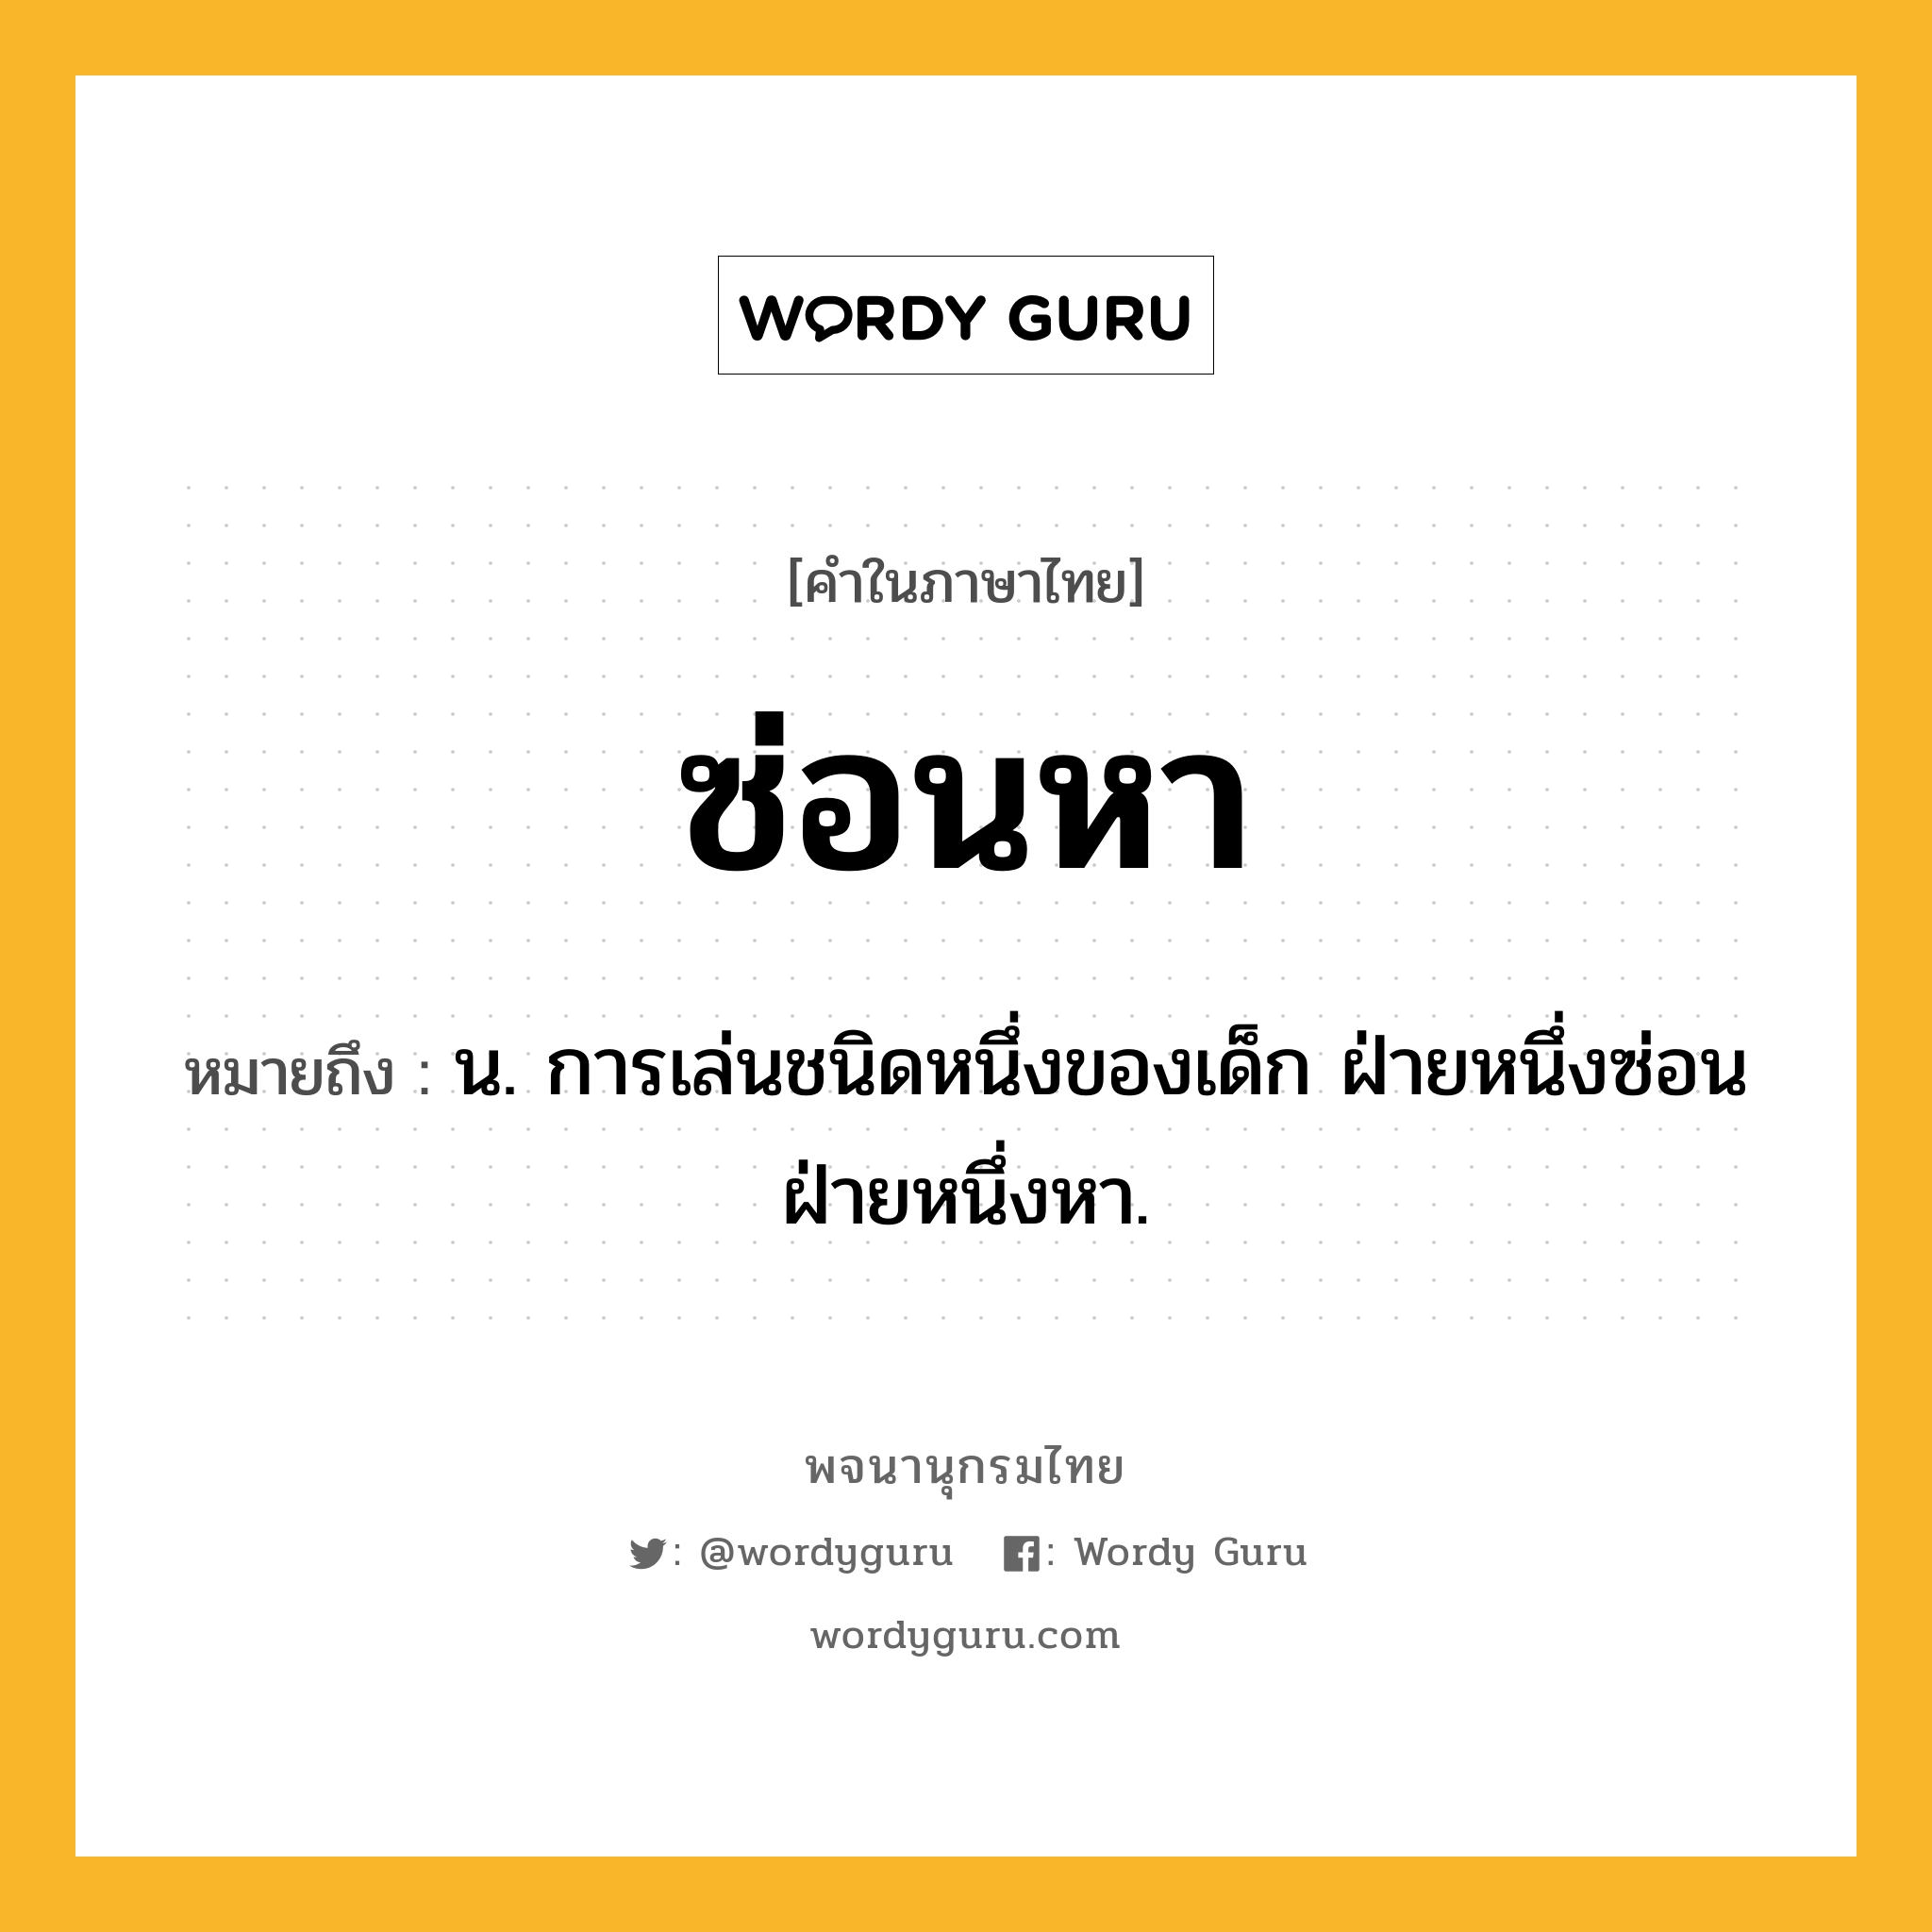 ซ่อนหา ความหมาย หมายถึงอะไร?, คำในภาษาไทย ซ่อนหา หมายถึง น. การเล่นชนิดหนึ่งของเด็ก ฝ่ายหนึ่งซ่อนฝ่ายหนึ่งหา.